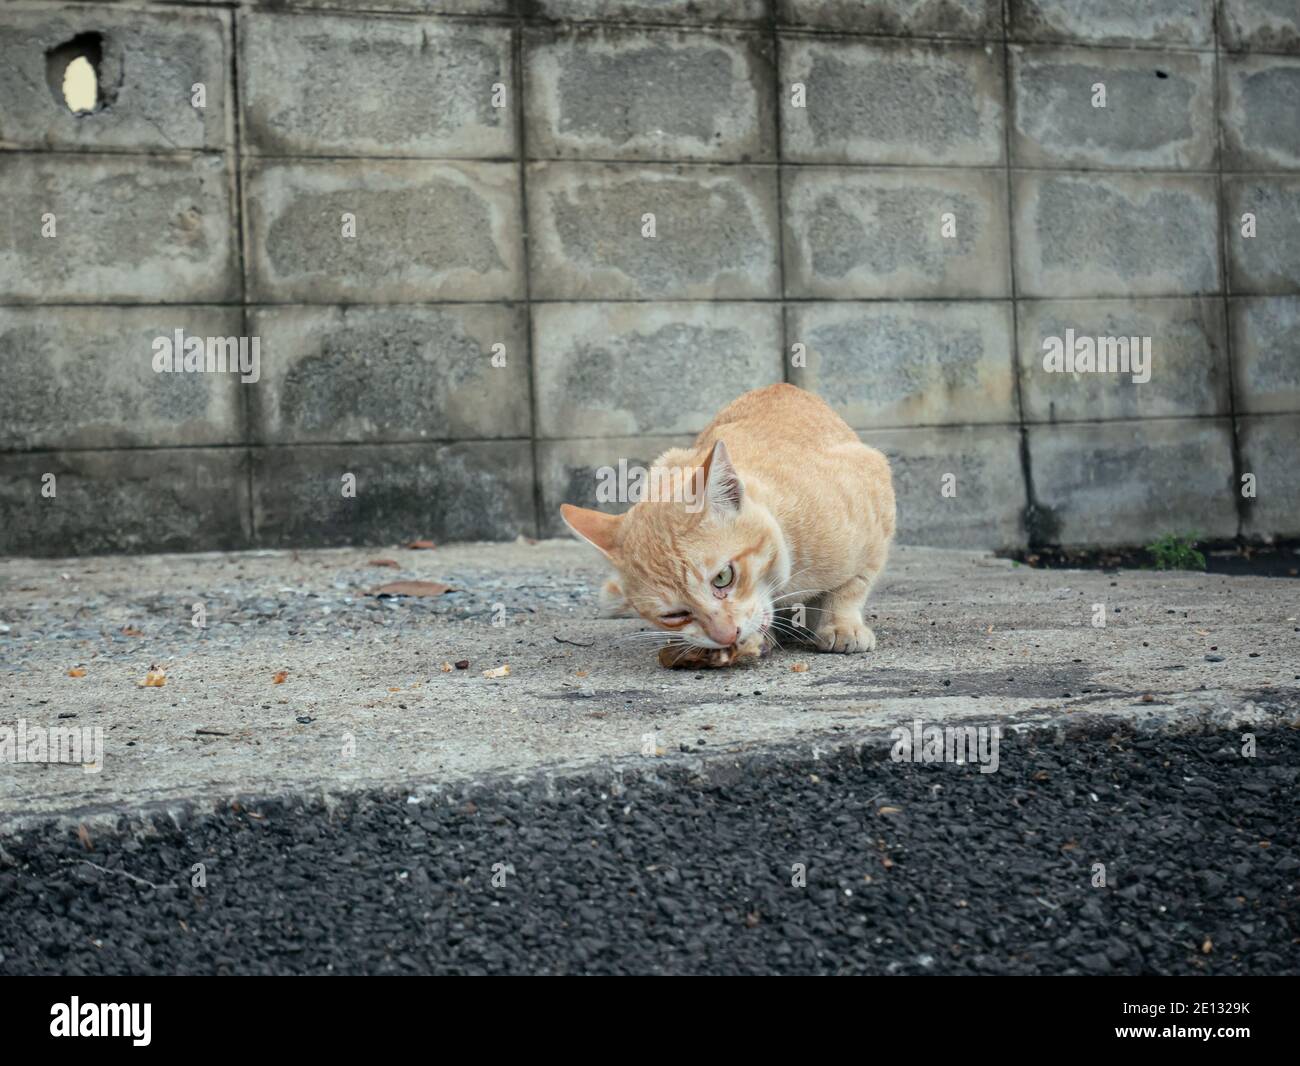 Les chats mangeant des restes de nourriture sur le sol Banque D'Images